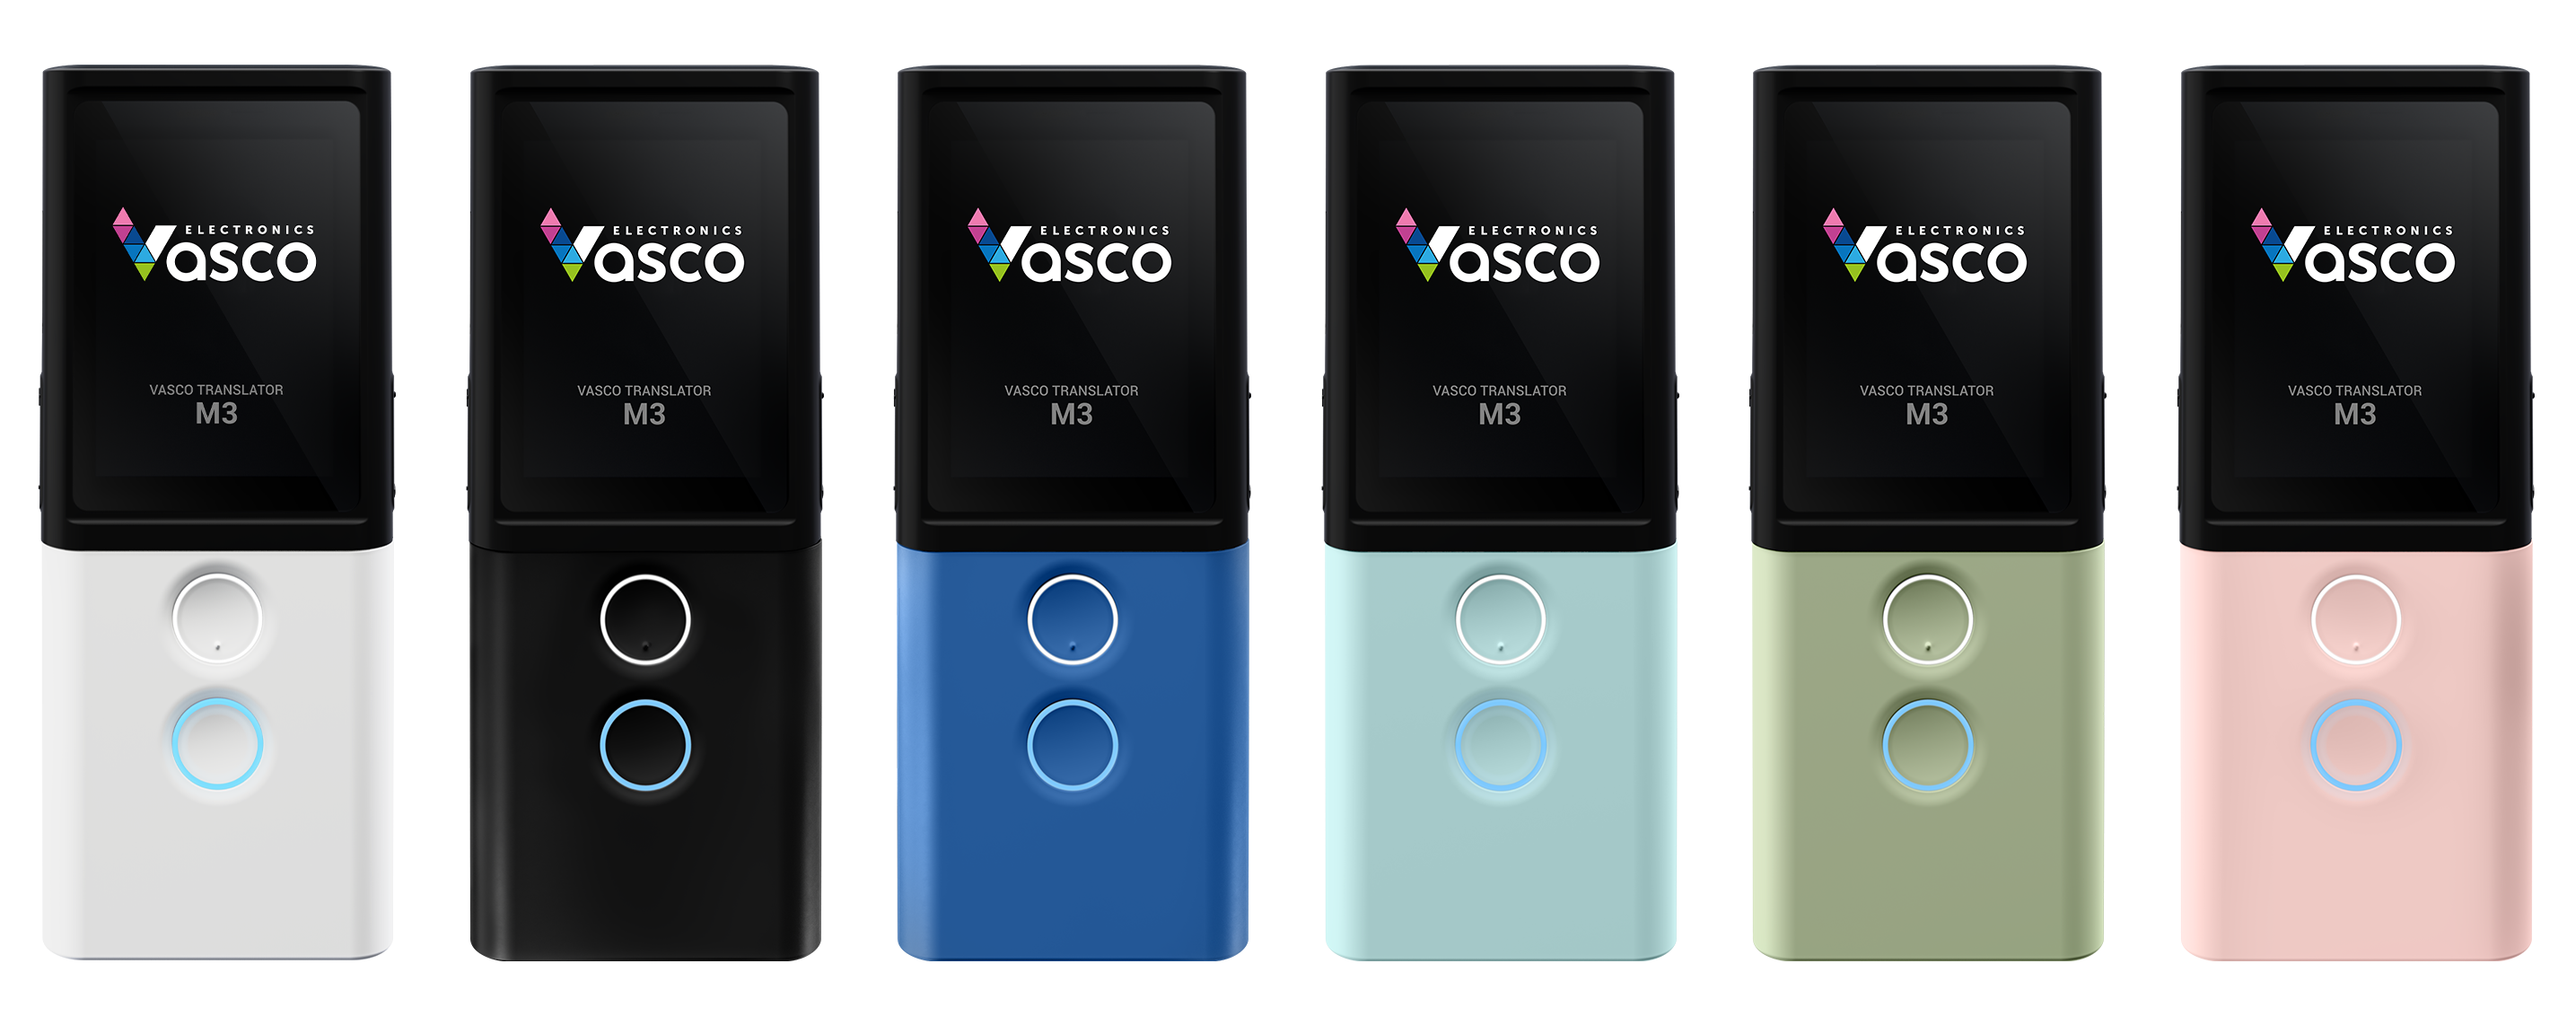 Vasco Translator M3 - all colors